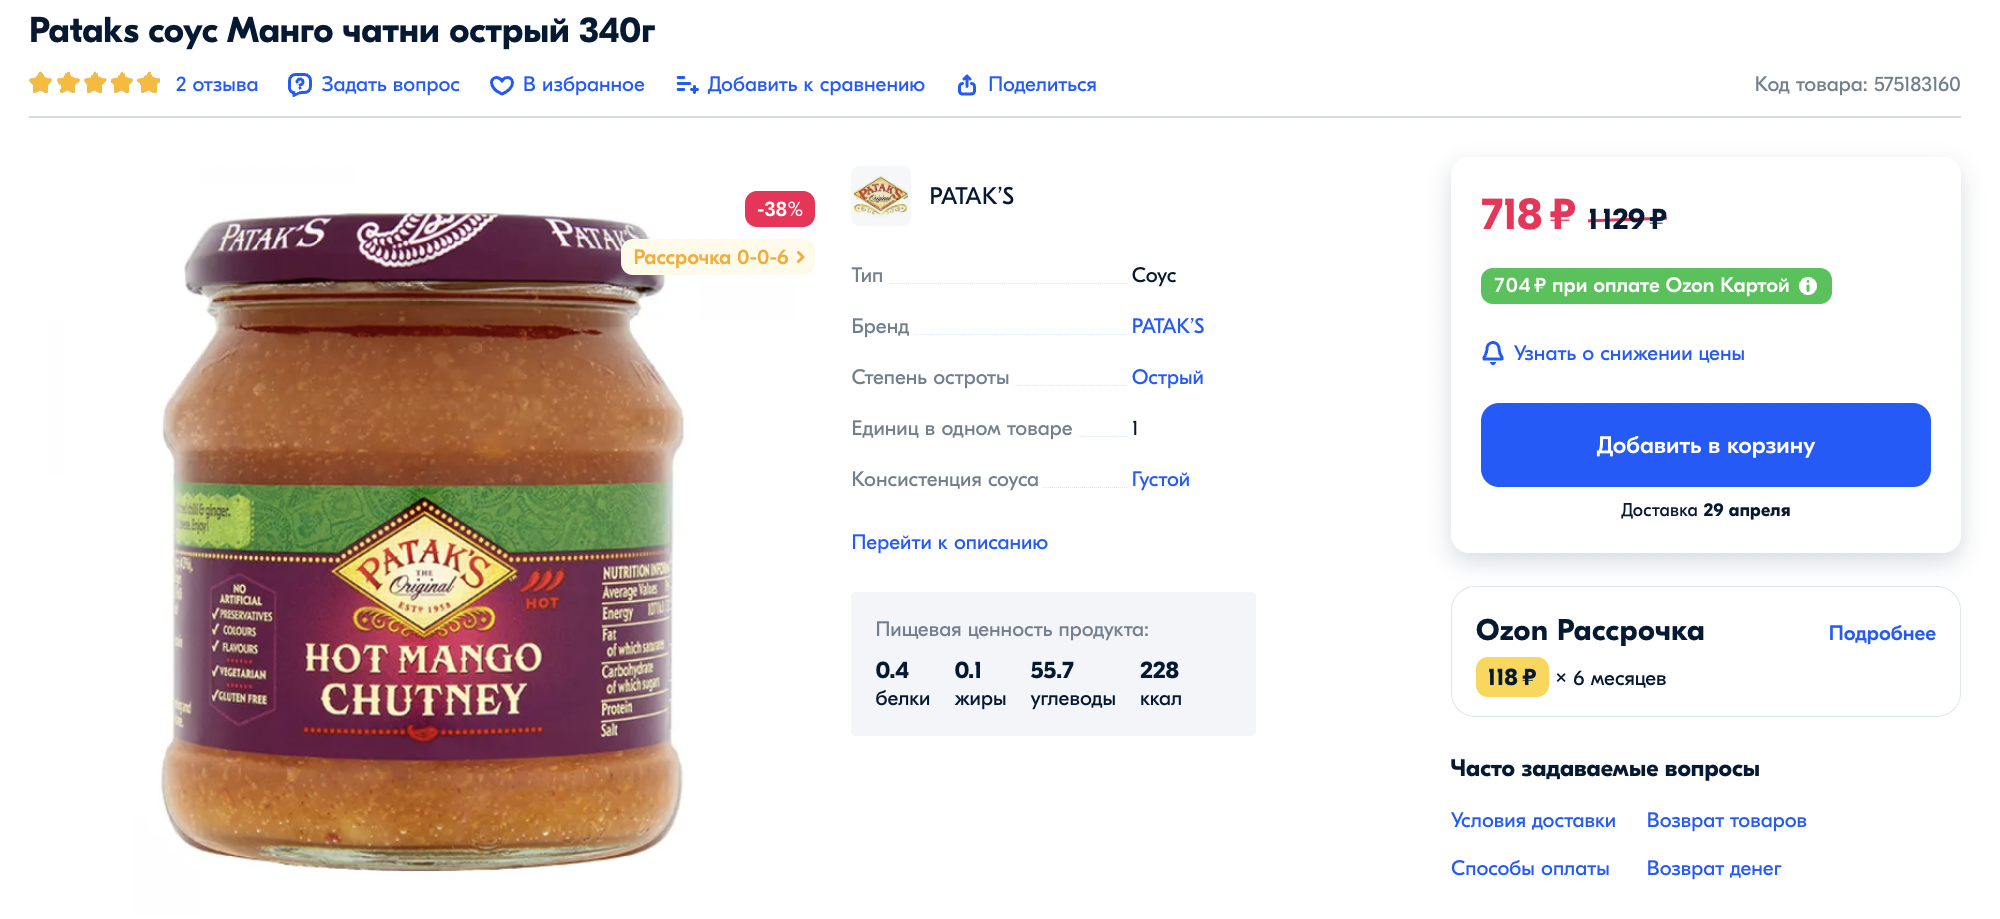 Чатни фирмы Patak’s мой любимый. На маркетплейсе он стоит дорого. Выгоднее покупать соус в офлайн-магазинах: последний раз я купила так банку примерно за 300 ₽. Источник: ozon.ru